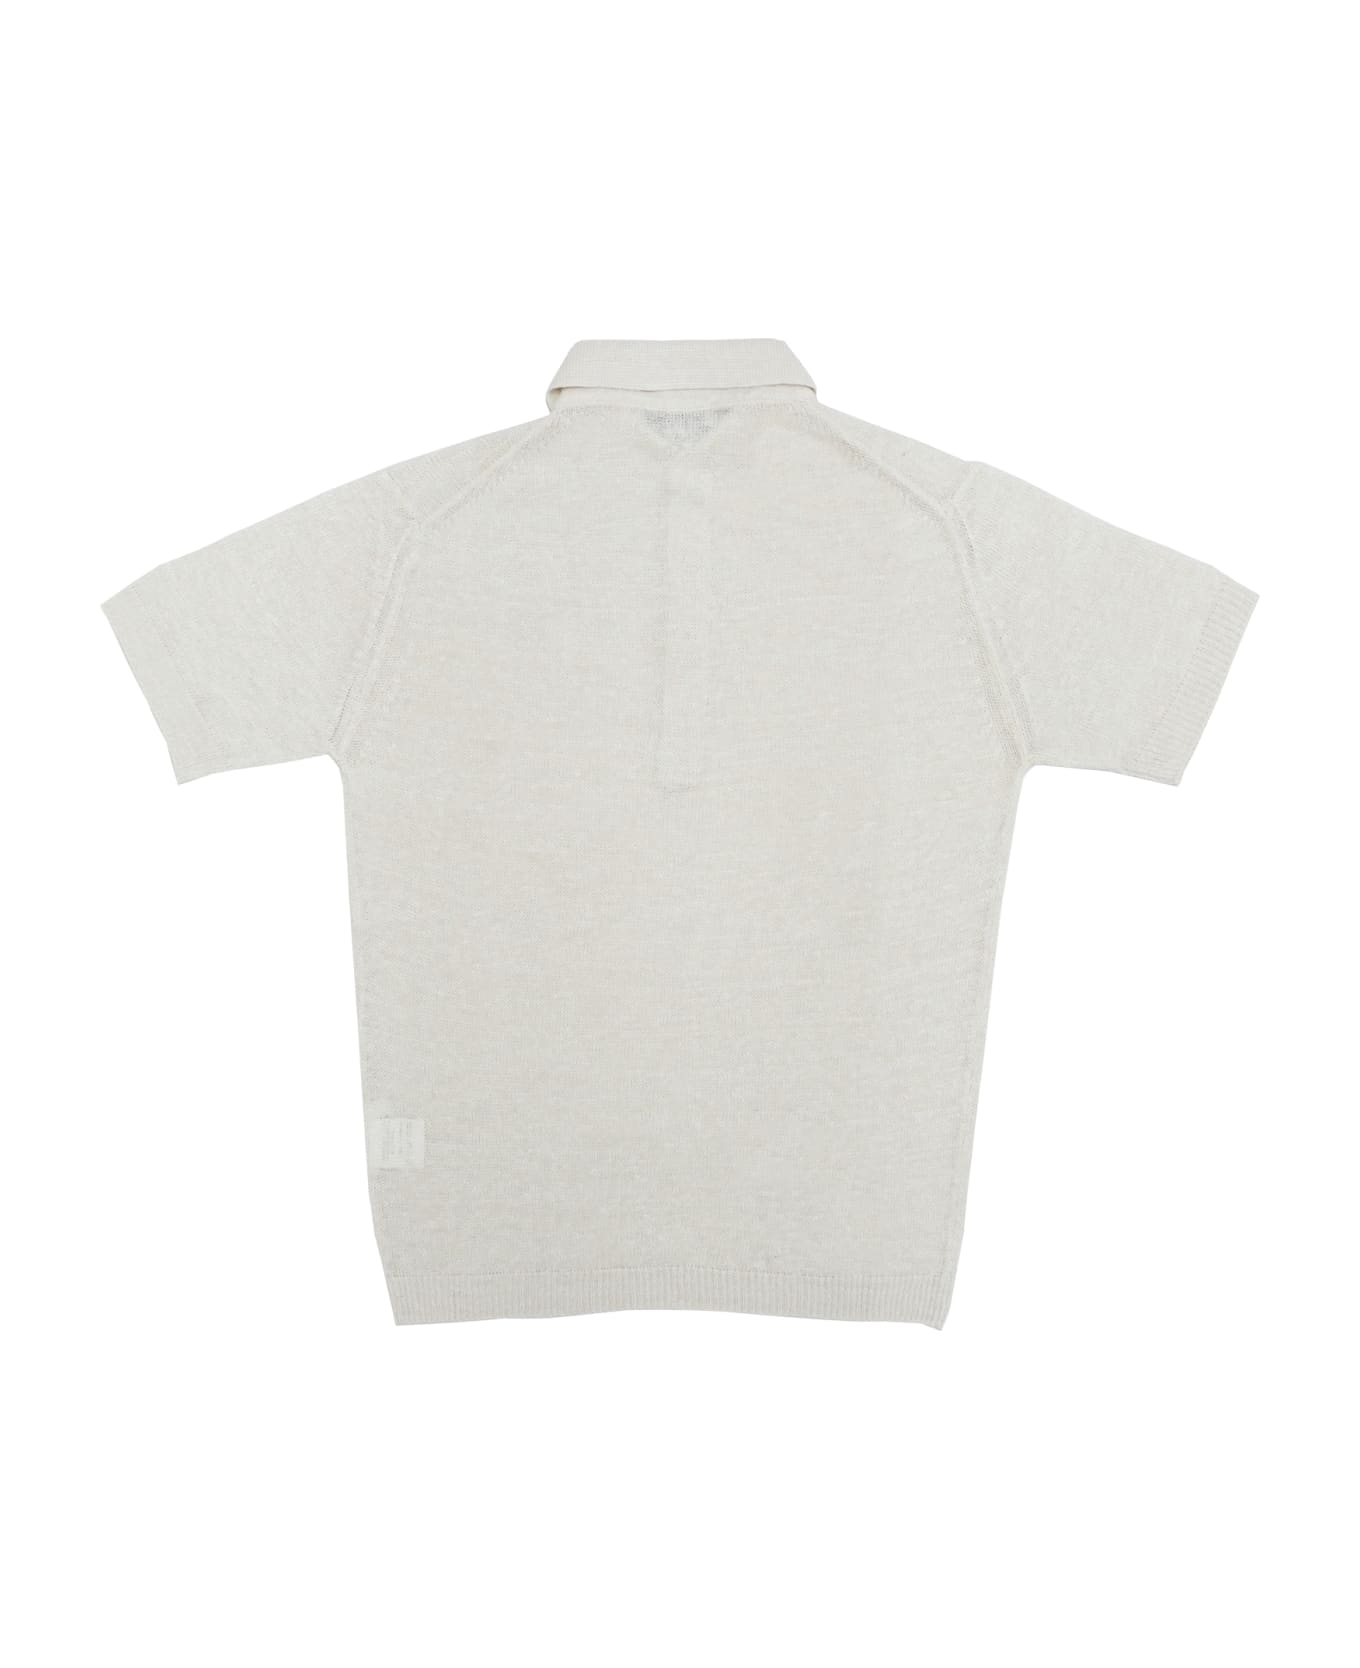 Filippo De Laurentiis Polo Shirt - White